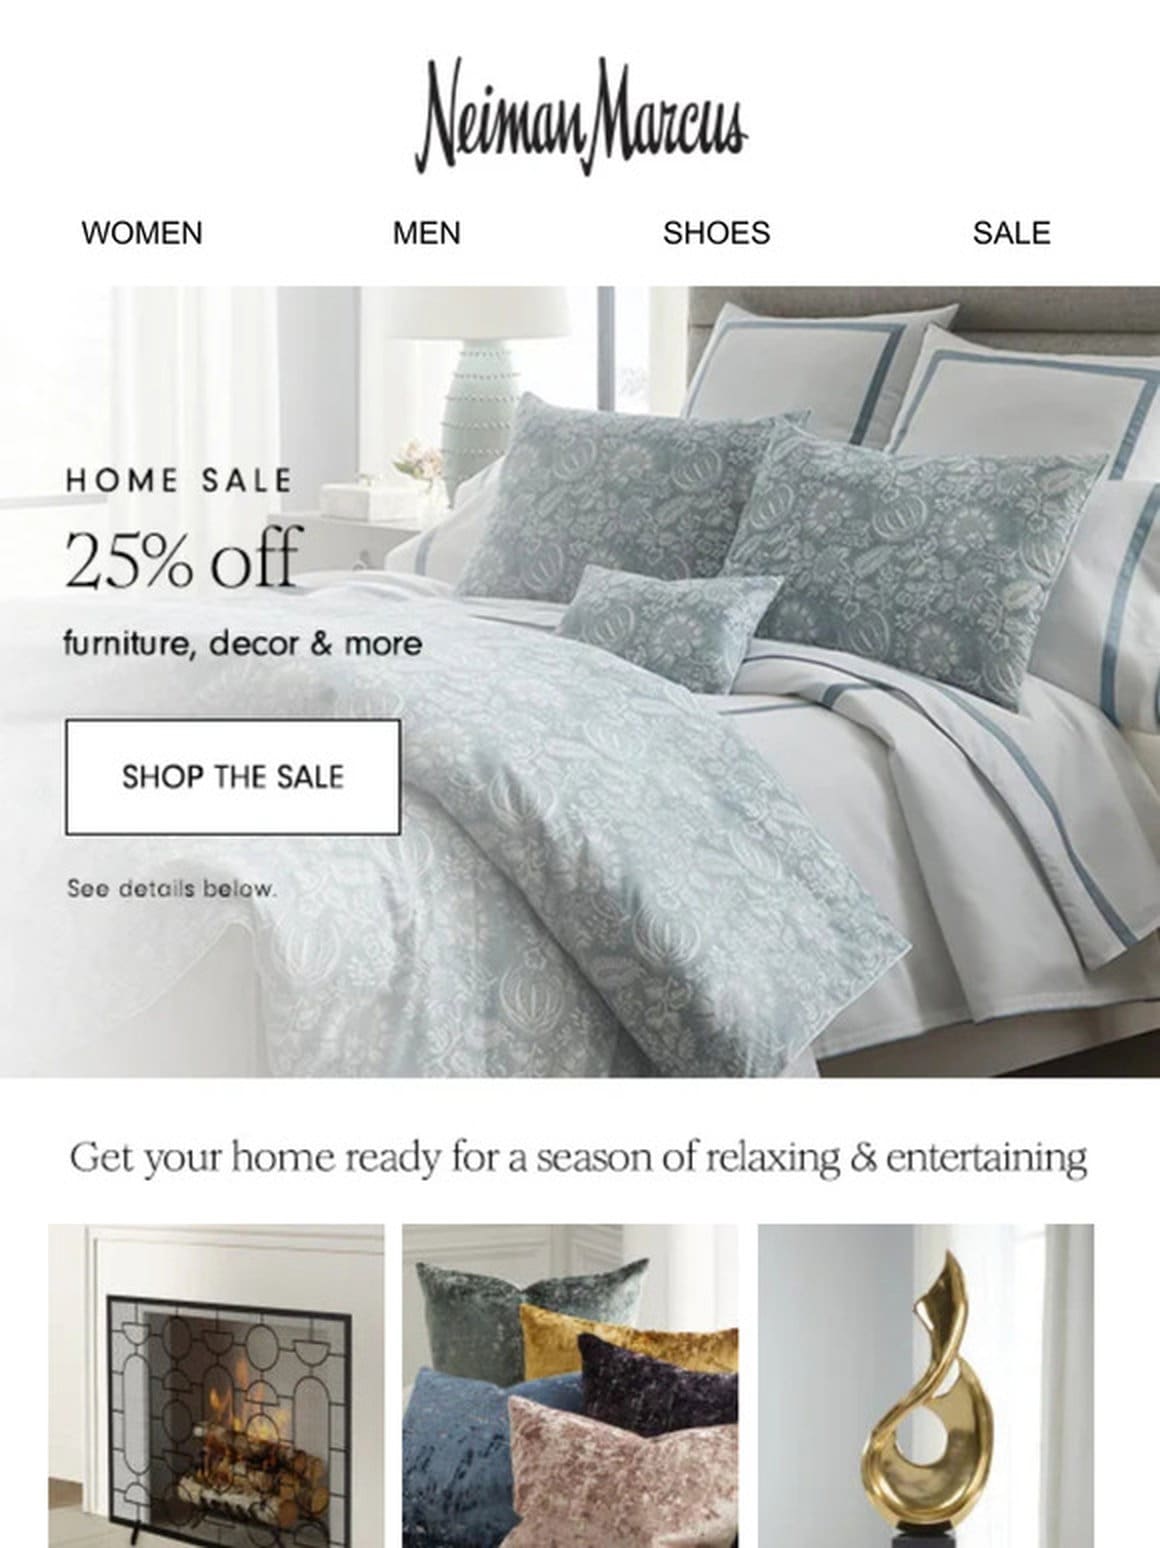 HOME SALE: 25% off furniture， decor & more